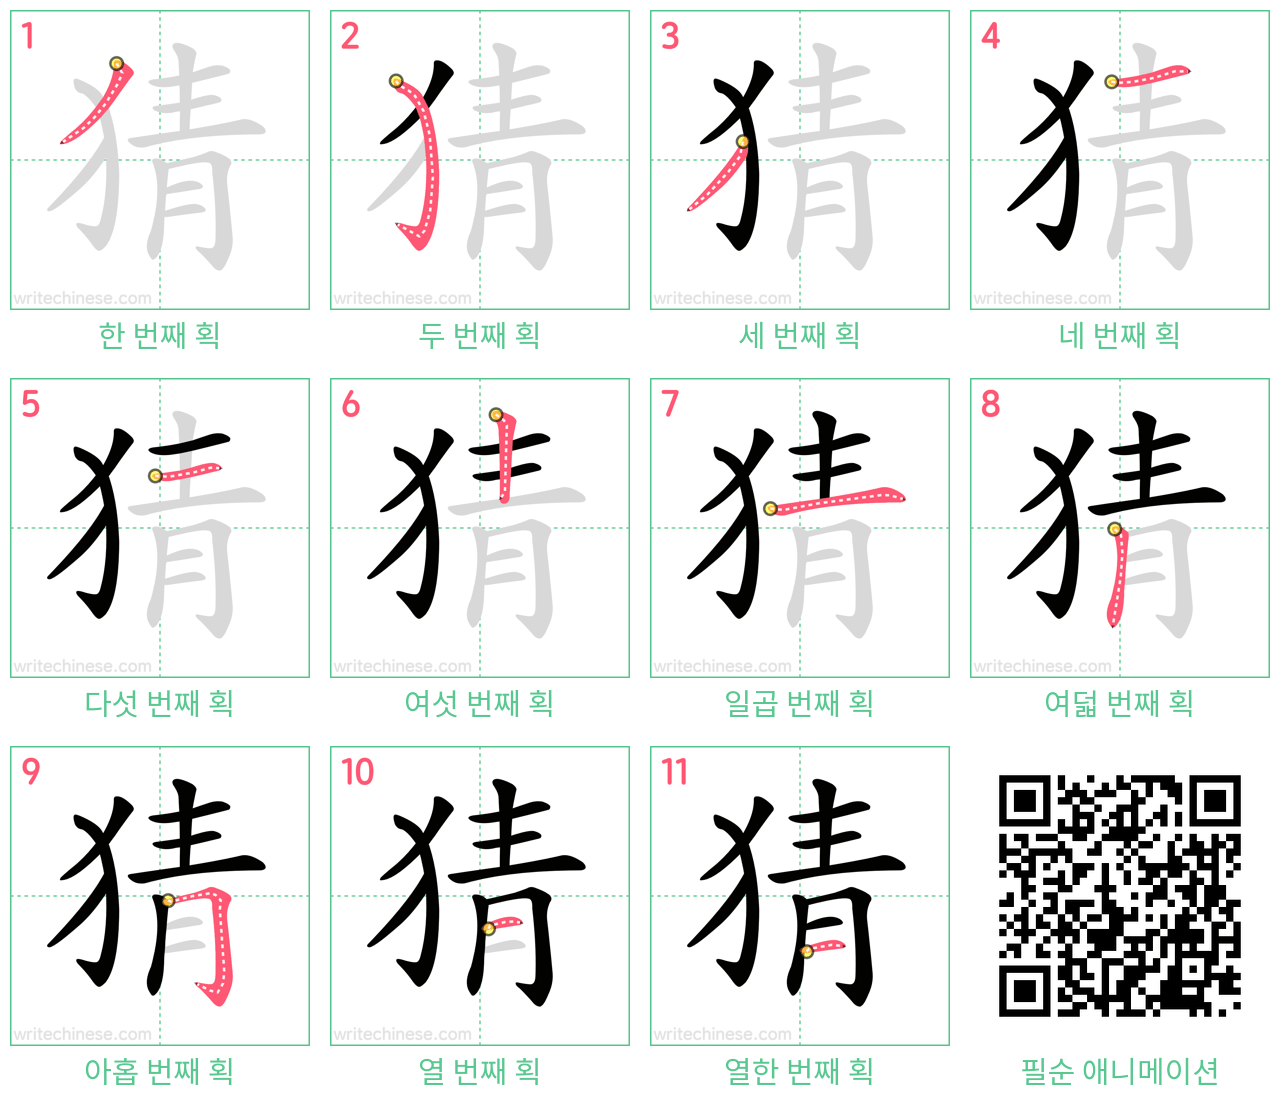 猜 step-by-step stroke order diagrams